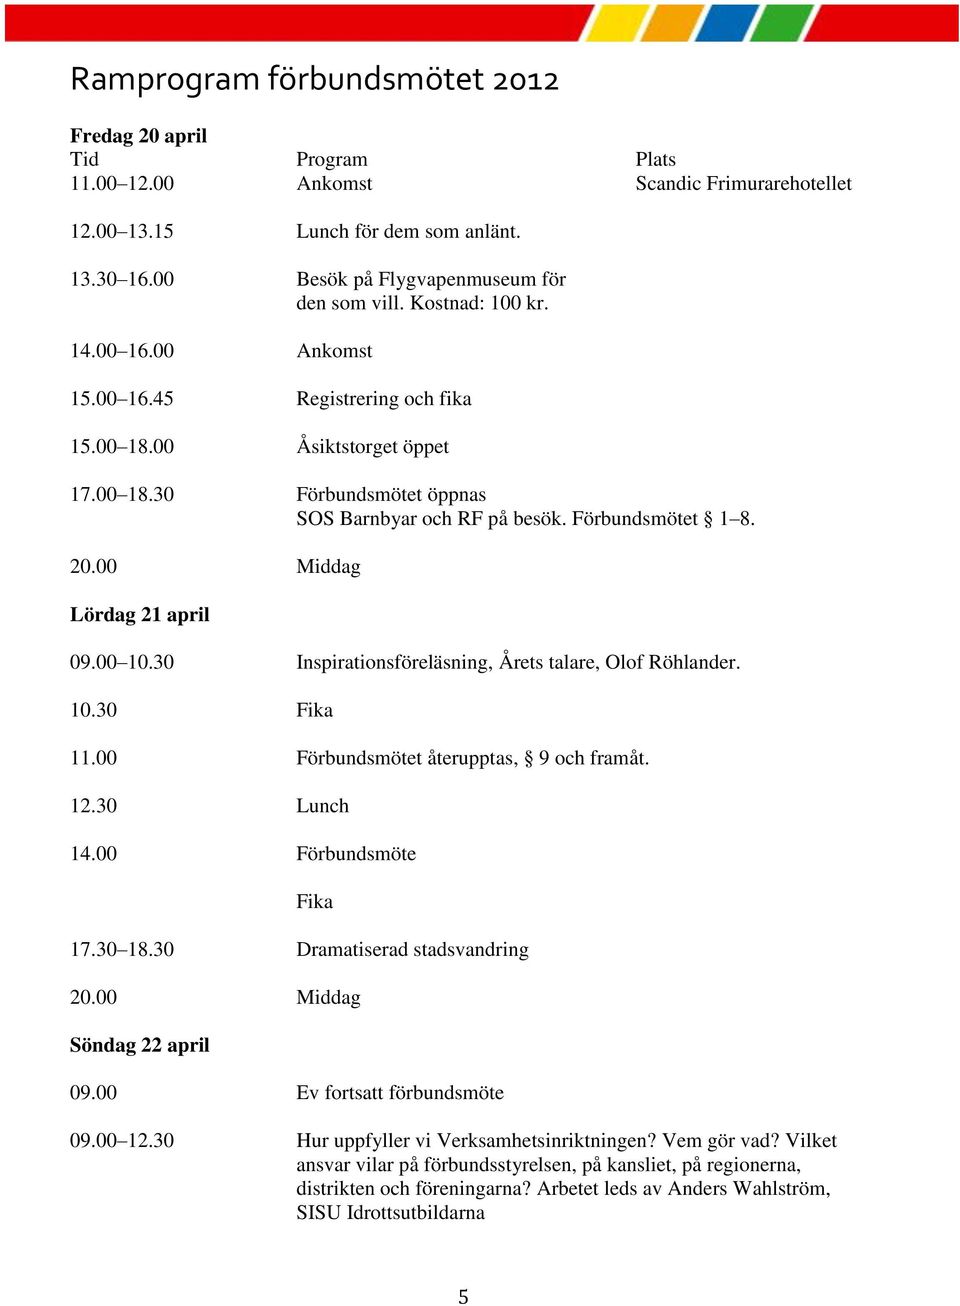 Förbundsmötet 1 8. 20.00 Middag Lördag 21 april 09.00 10.30 Inspirationsföreläsning, Årets talare, Olof Röhlander. 10.30 Fika 11.00 Förbundsmötet återupptas, 9 och framåt. 12.30 Lunch 14.